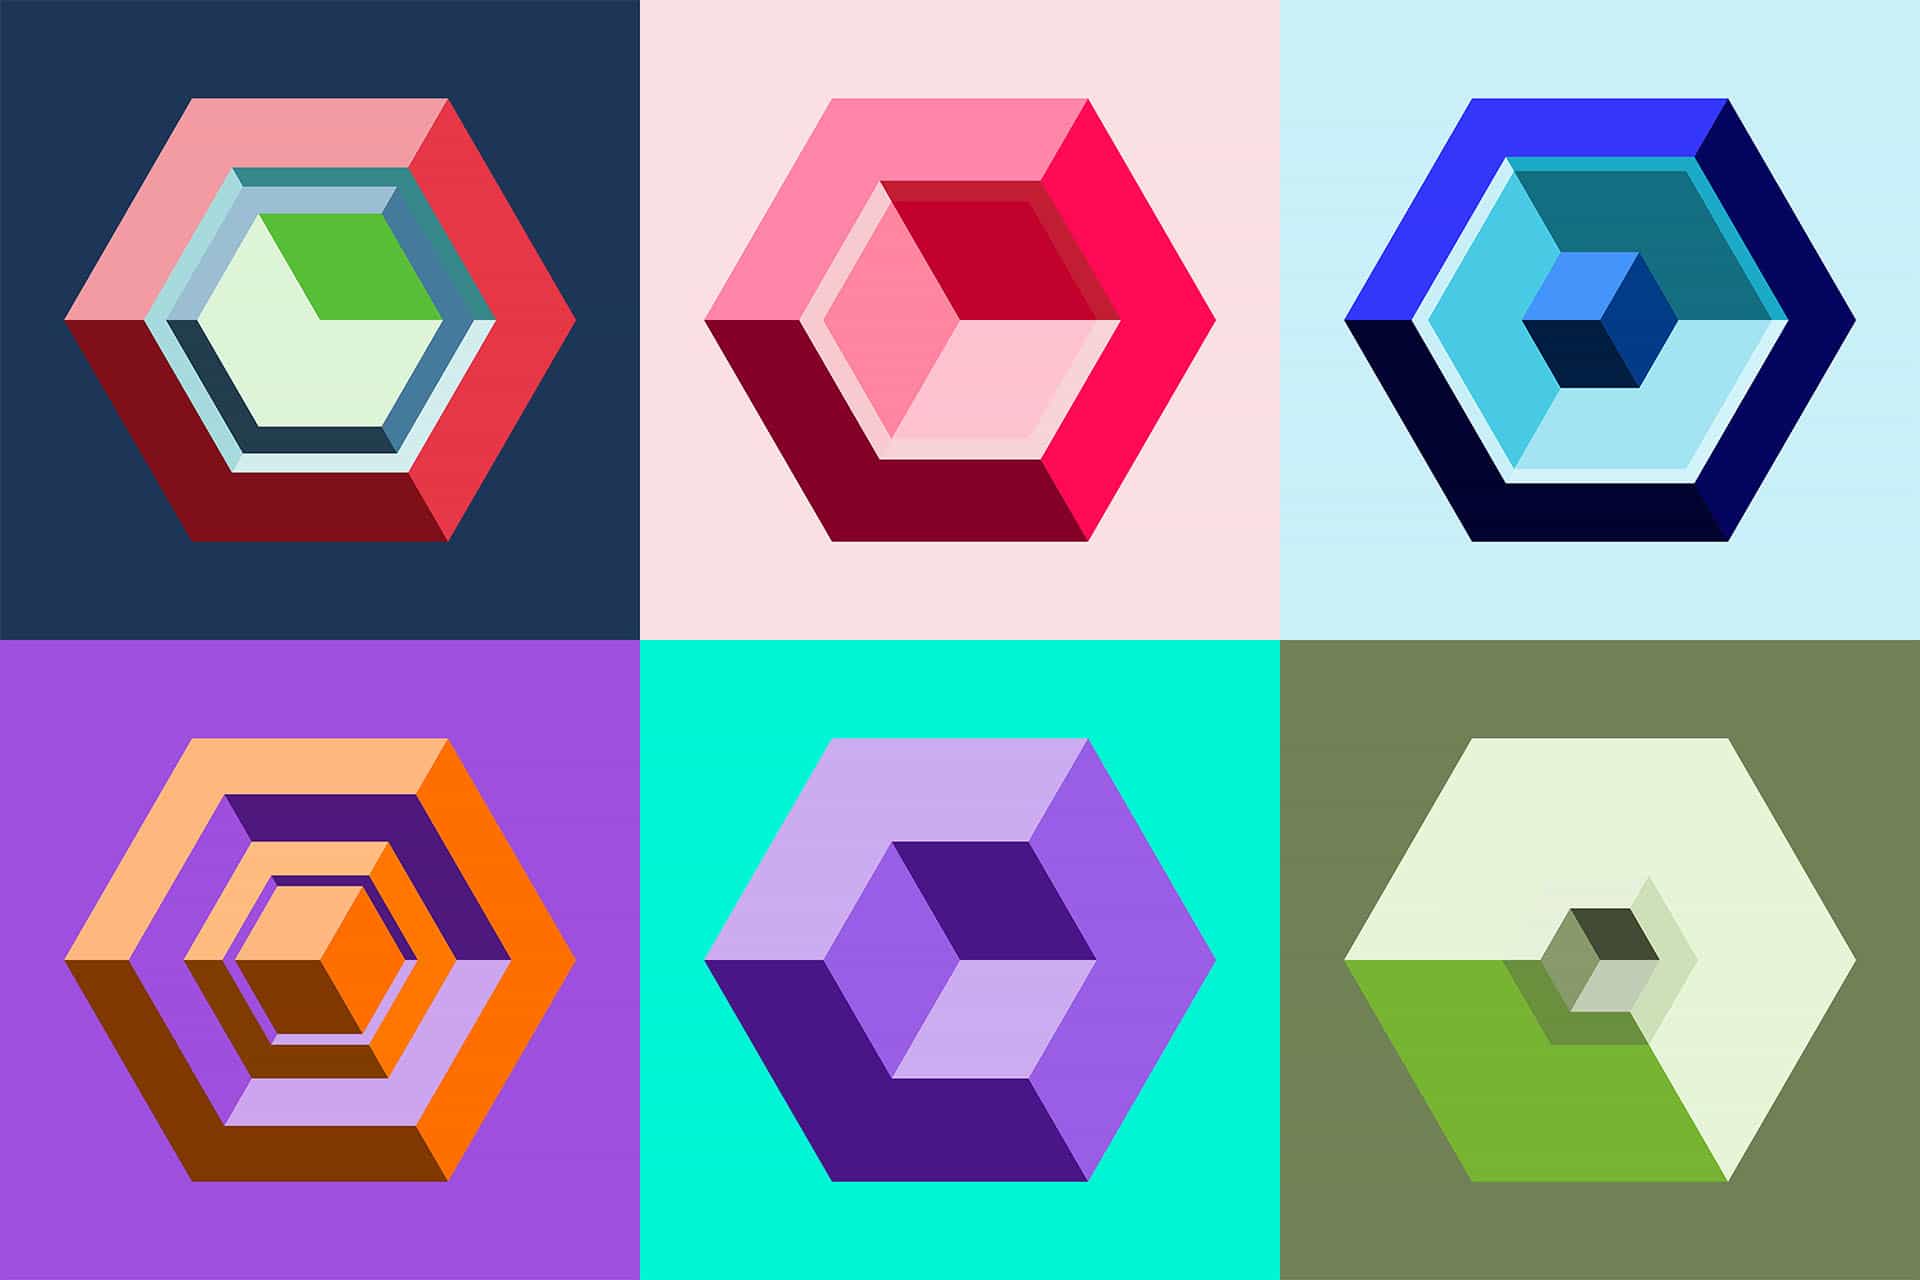 Hexagones - Art for Bots